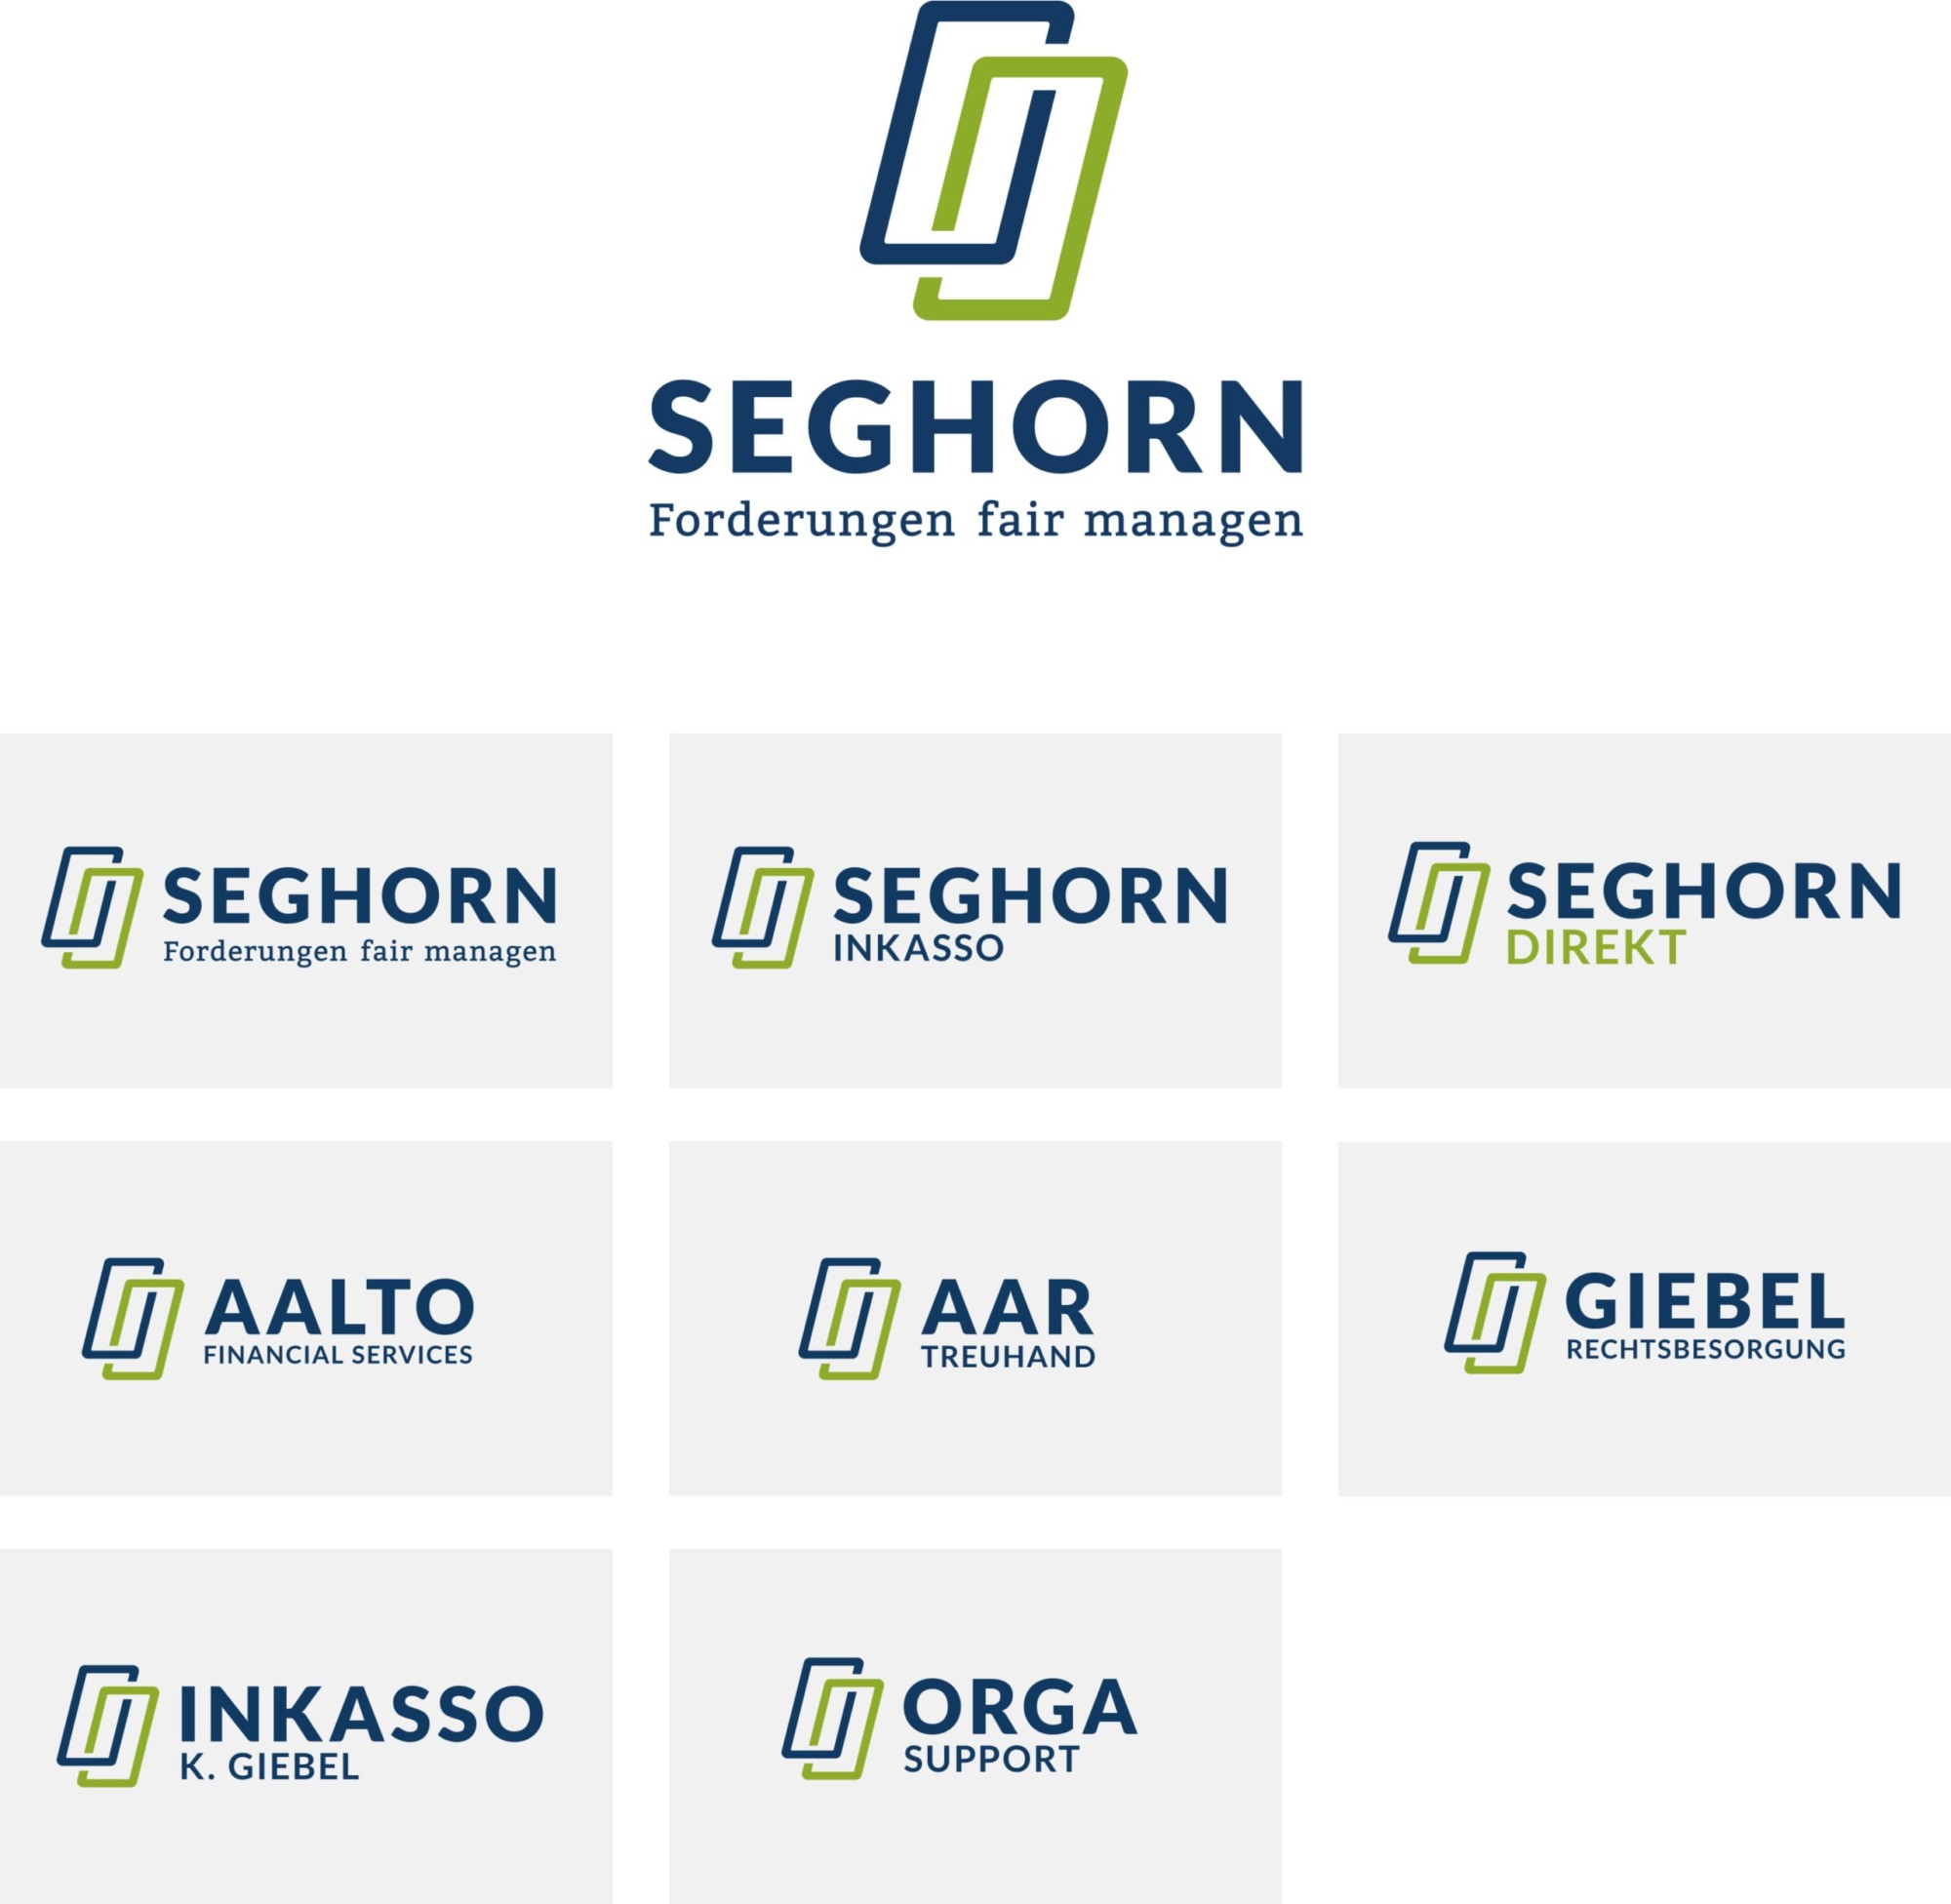 BFGA Werbeagentur | SEGHORN Logo Redesign Tochterfirmen